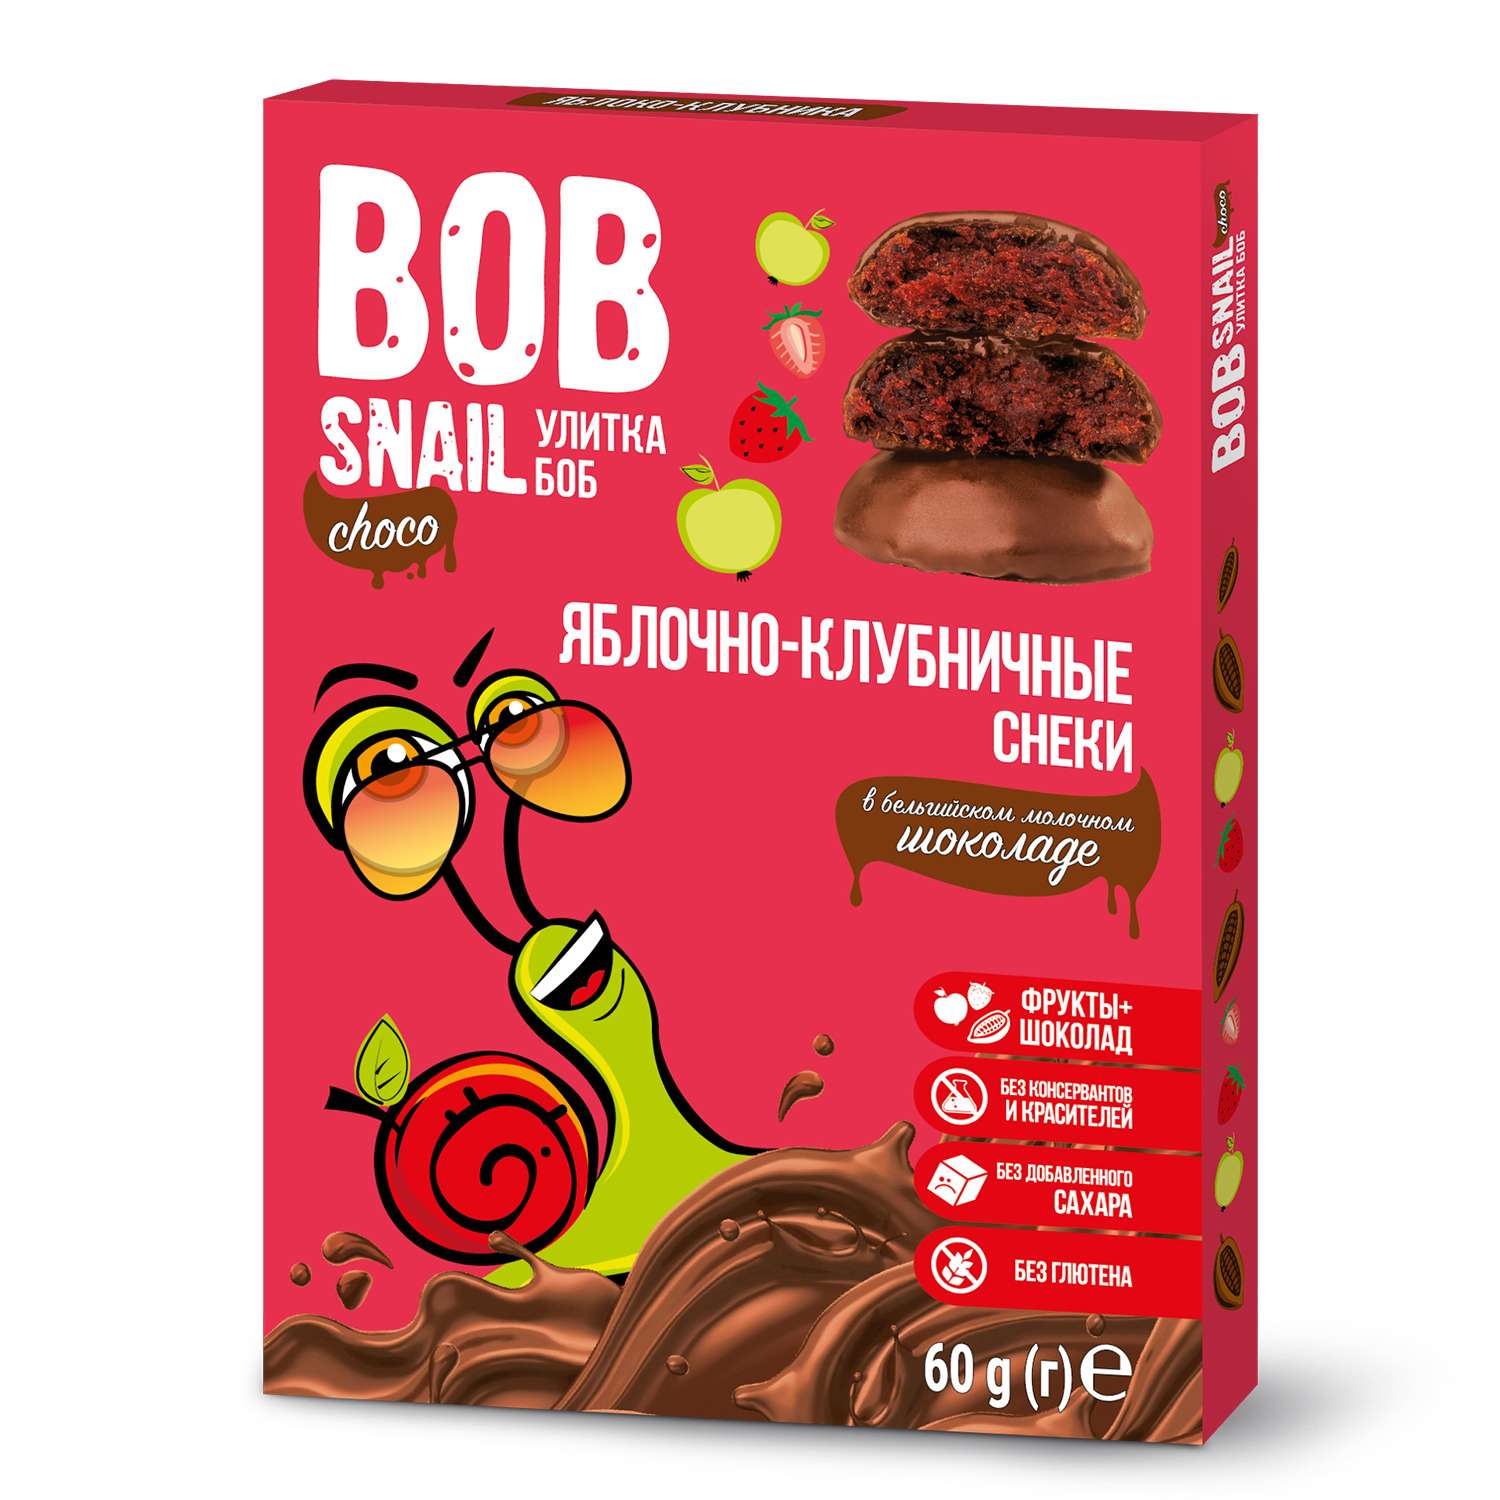 Снек Bob Snail Фруктово-ягодный яблочно-клубничный в молочном бельгийском шоколаде без добавленного сахара 60г - фото 1